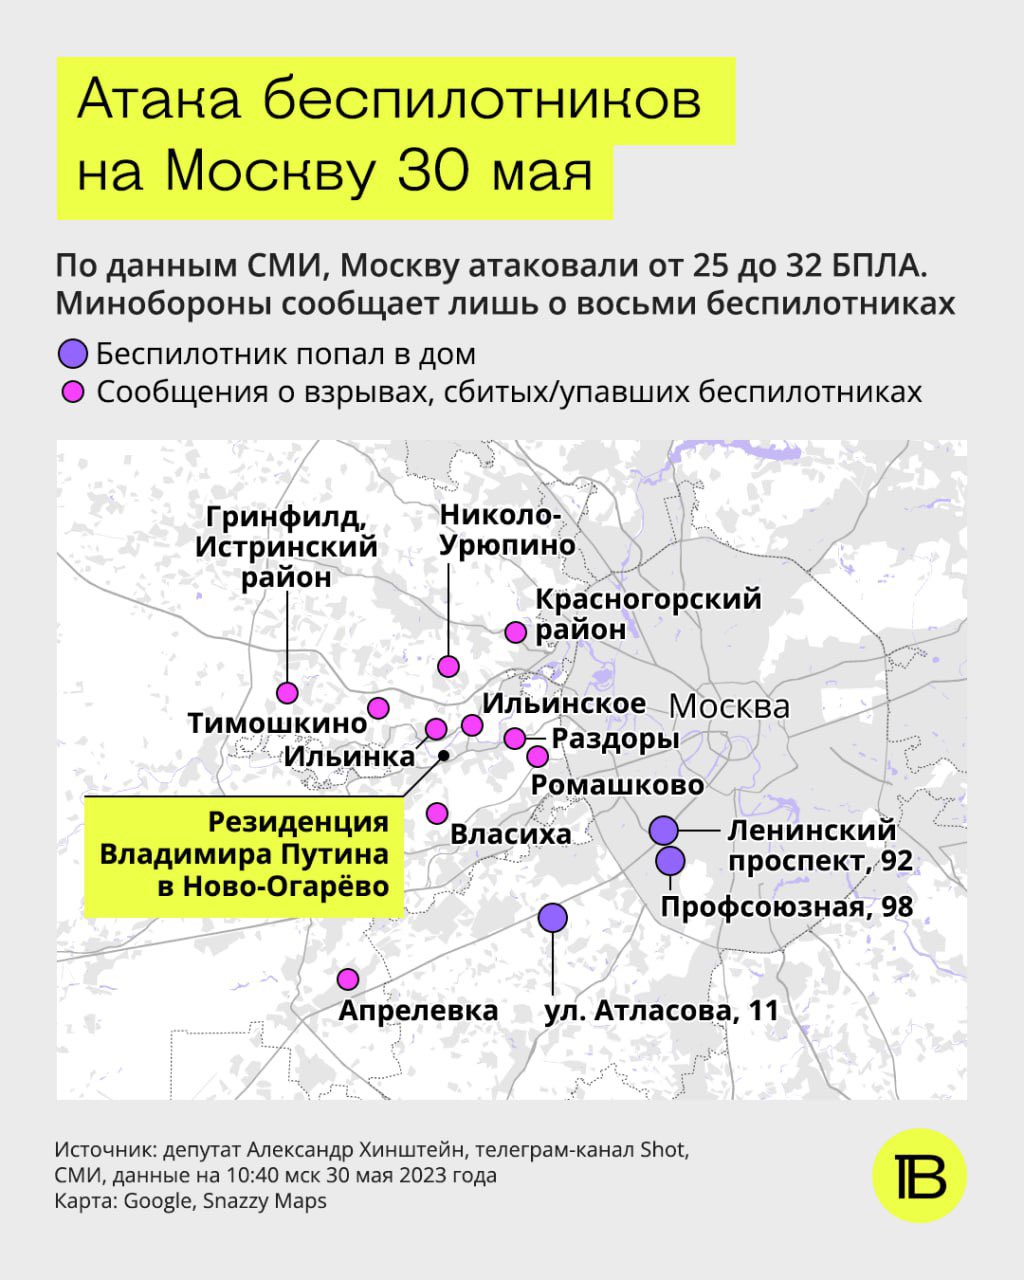 карта по атаке москвы беспилотниками